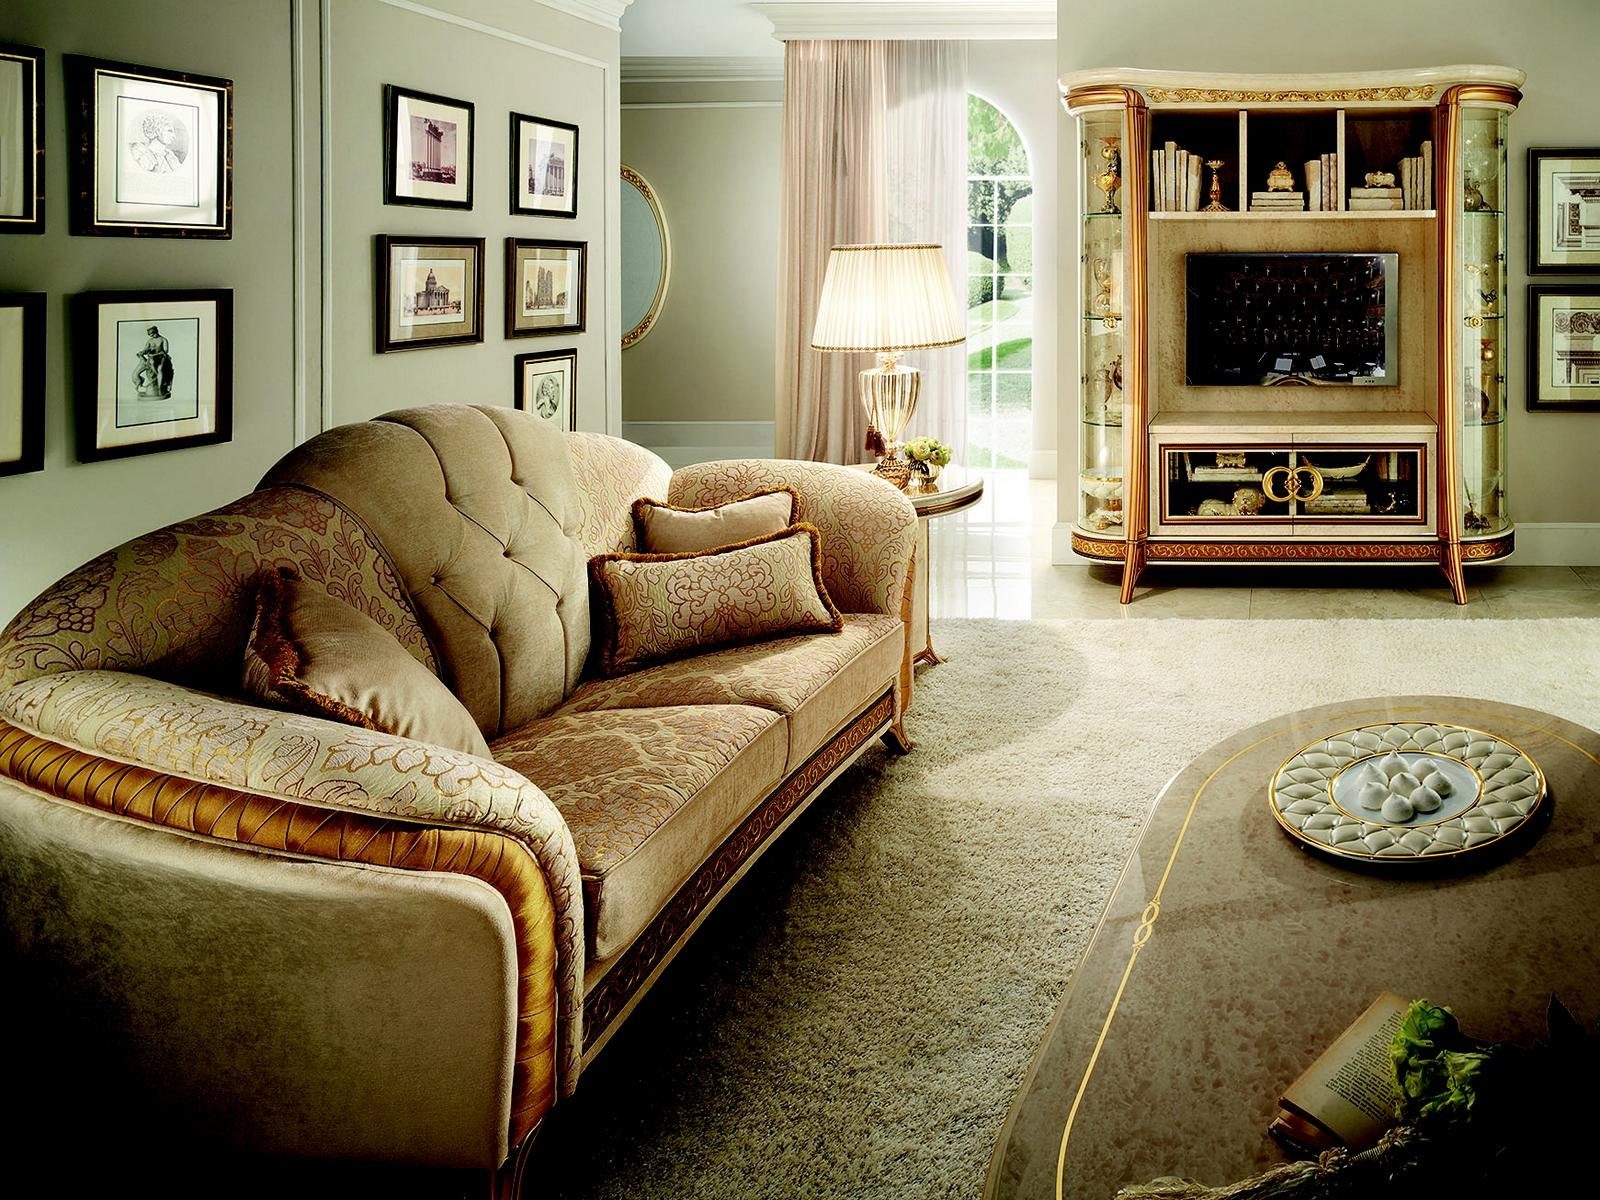 JVmoebel Wohnzimmer-Set, Luxus Klasse 3+2+1 Couch Möbel Italienische Neu Sofagarnitur arredoclassic™ Sofa